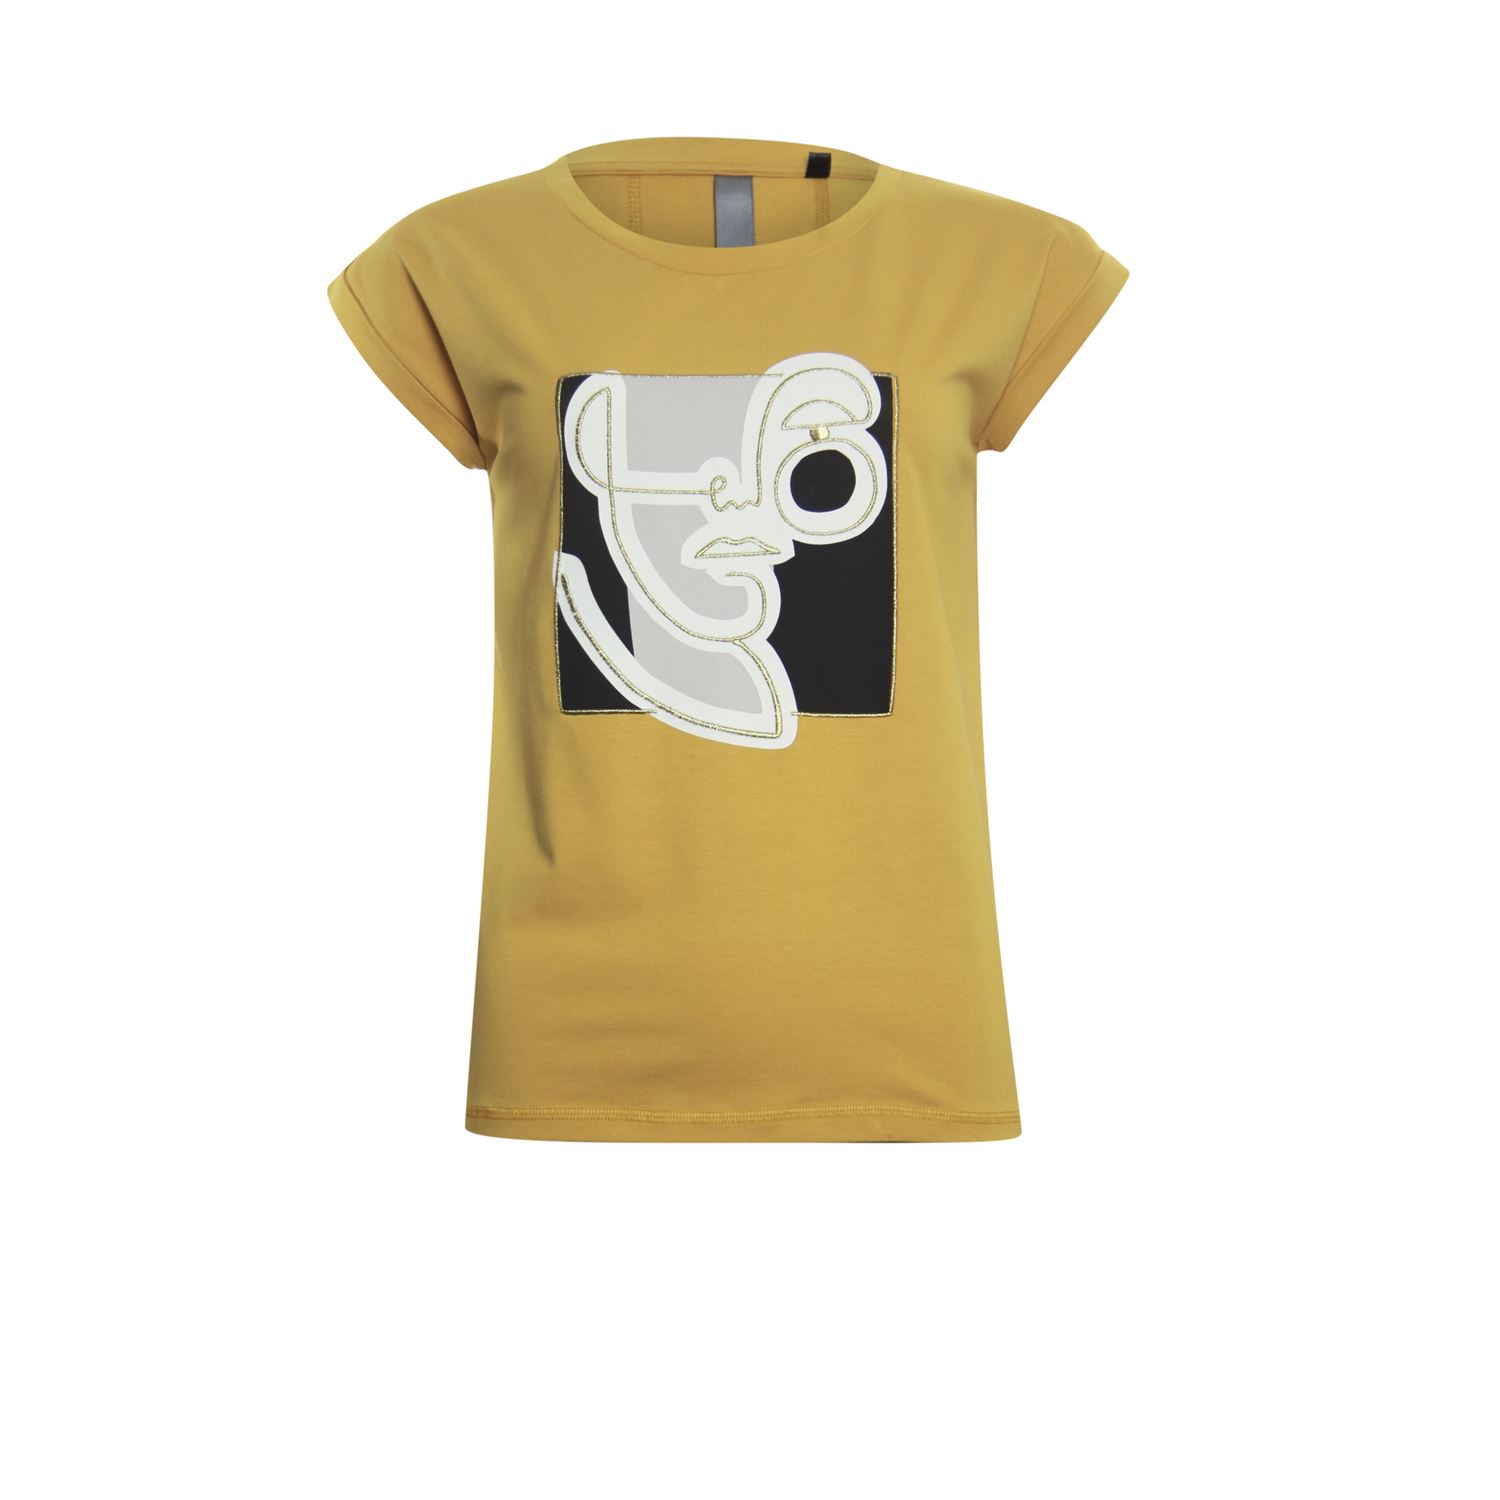 paneel Berg kleding op Duidelijk maken Poools T-shirt art print - Shop Poools dameskleding online